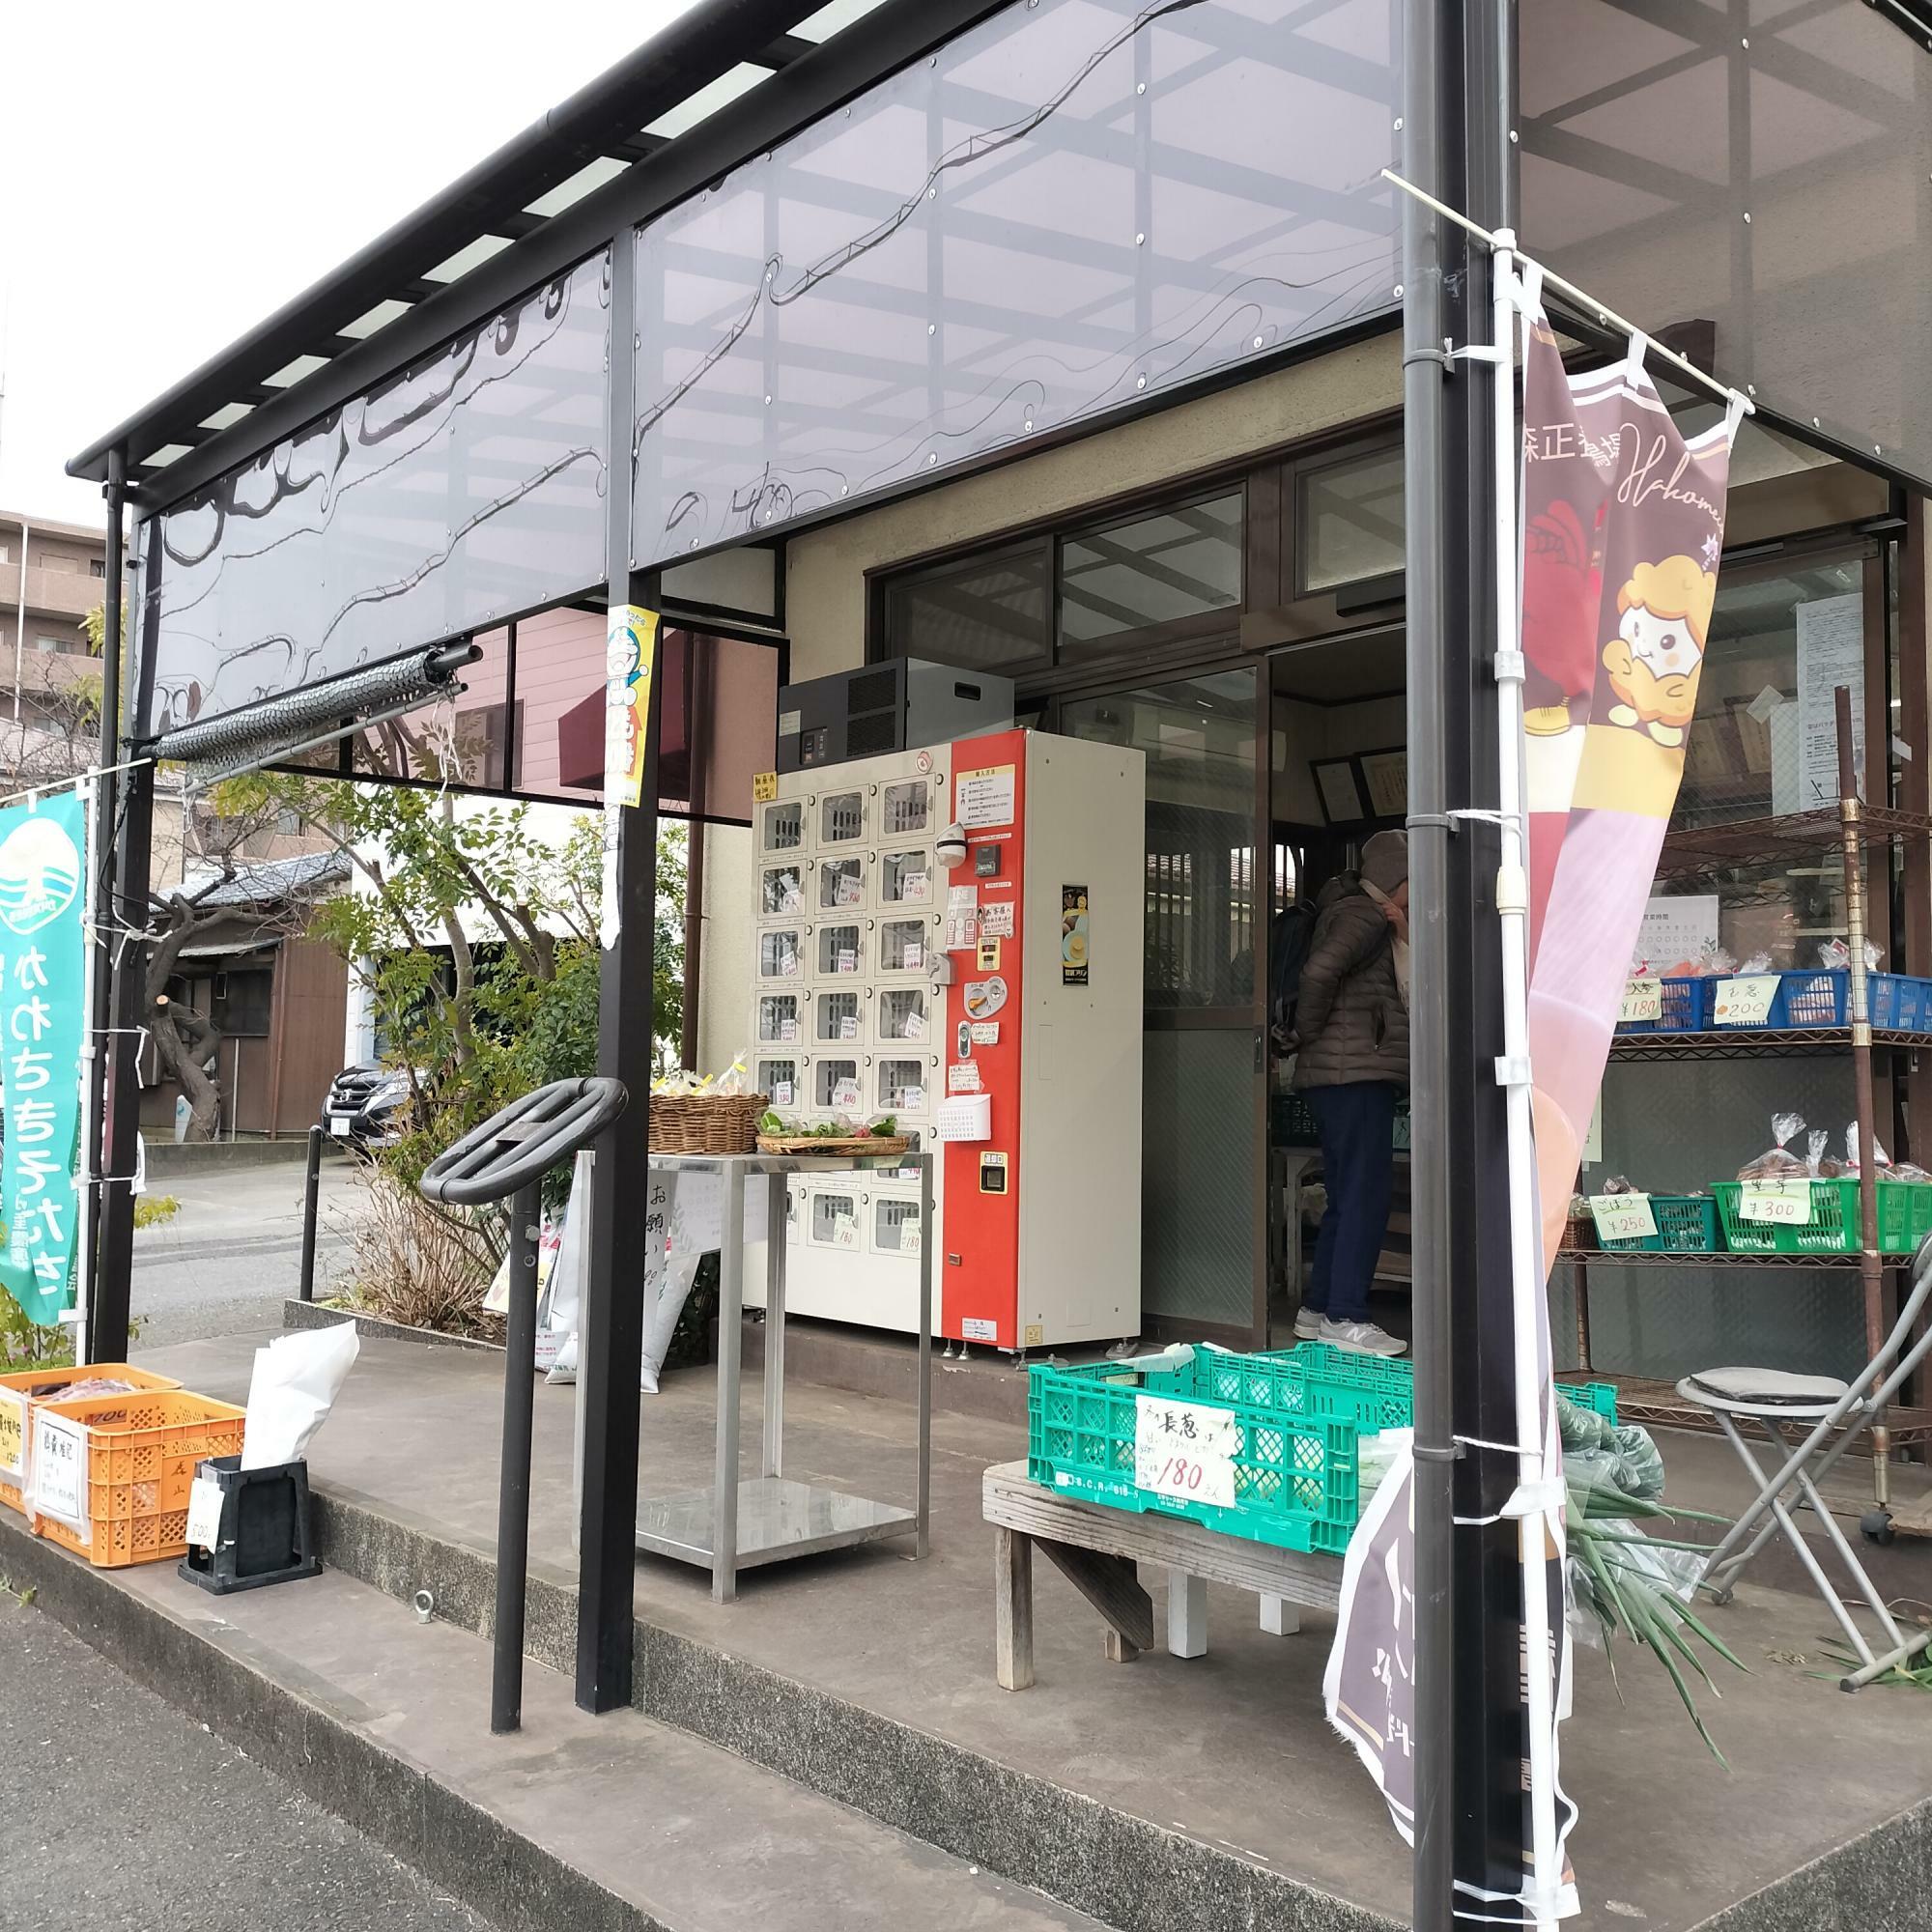 店頭では、自動販売機で卵や野菜を販売。価格は400円。手作りの鶏糞肥料も販売。